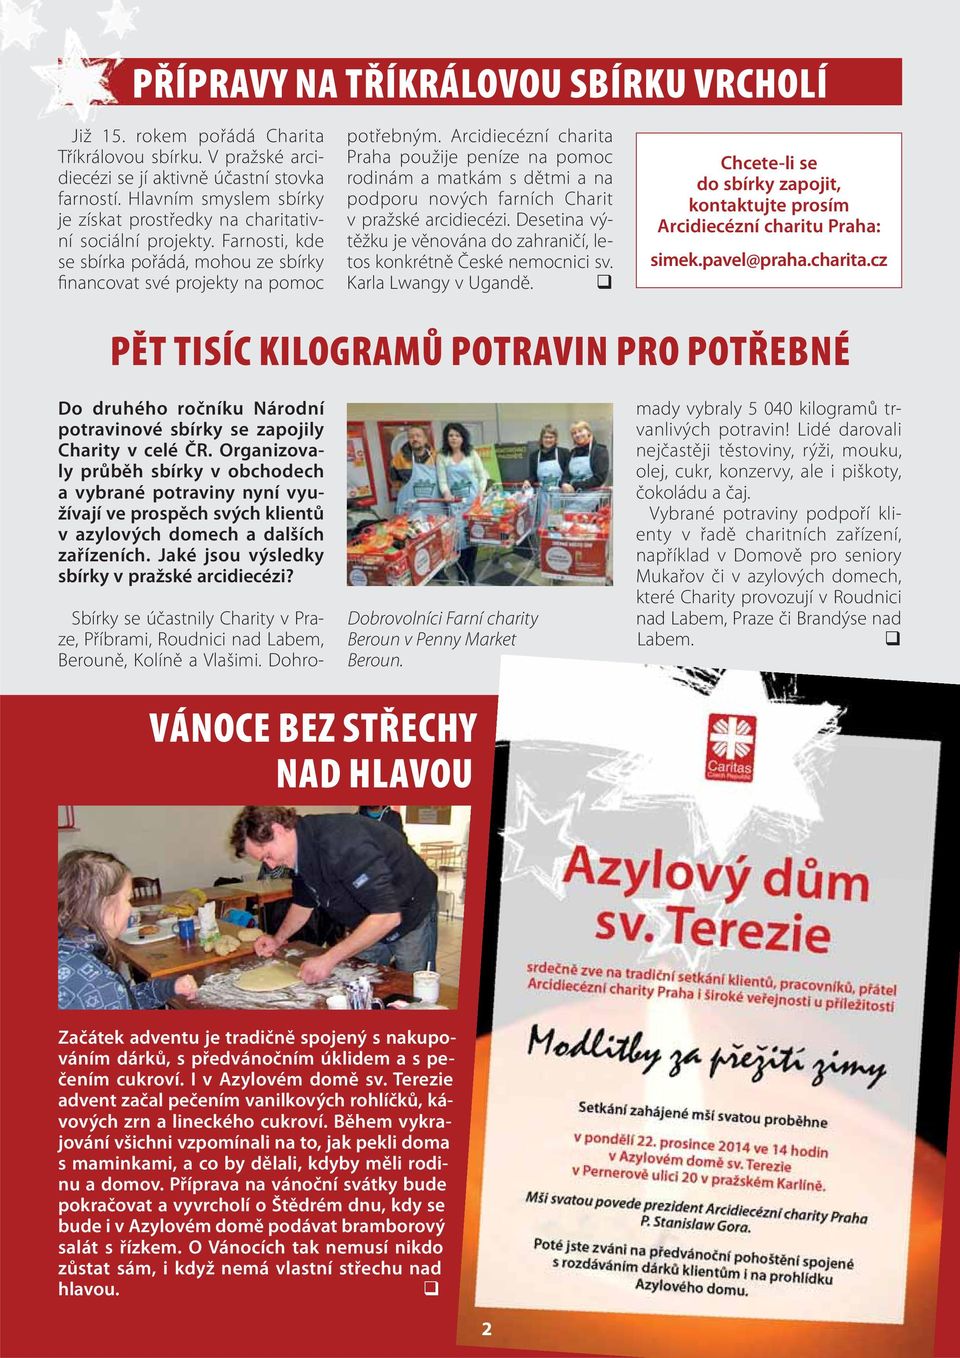 Arcidiecézní charita Praha použije peníze na pomoc rodinám a matkám s dětmi a na podporu nových farních Charit v pražské arcidiecézi.